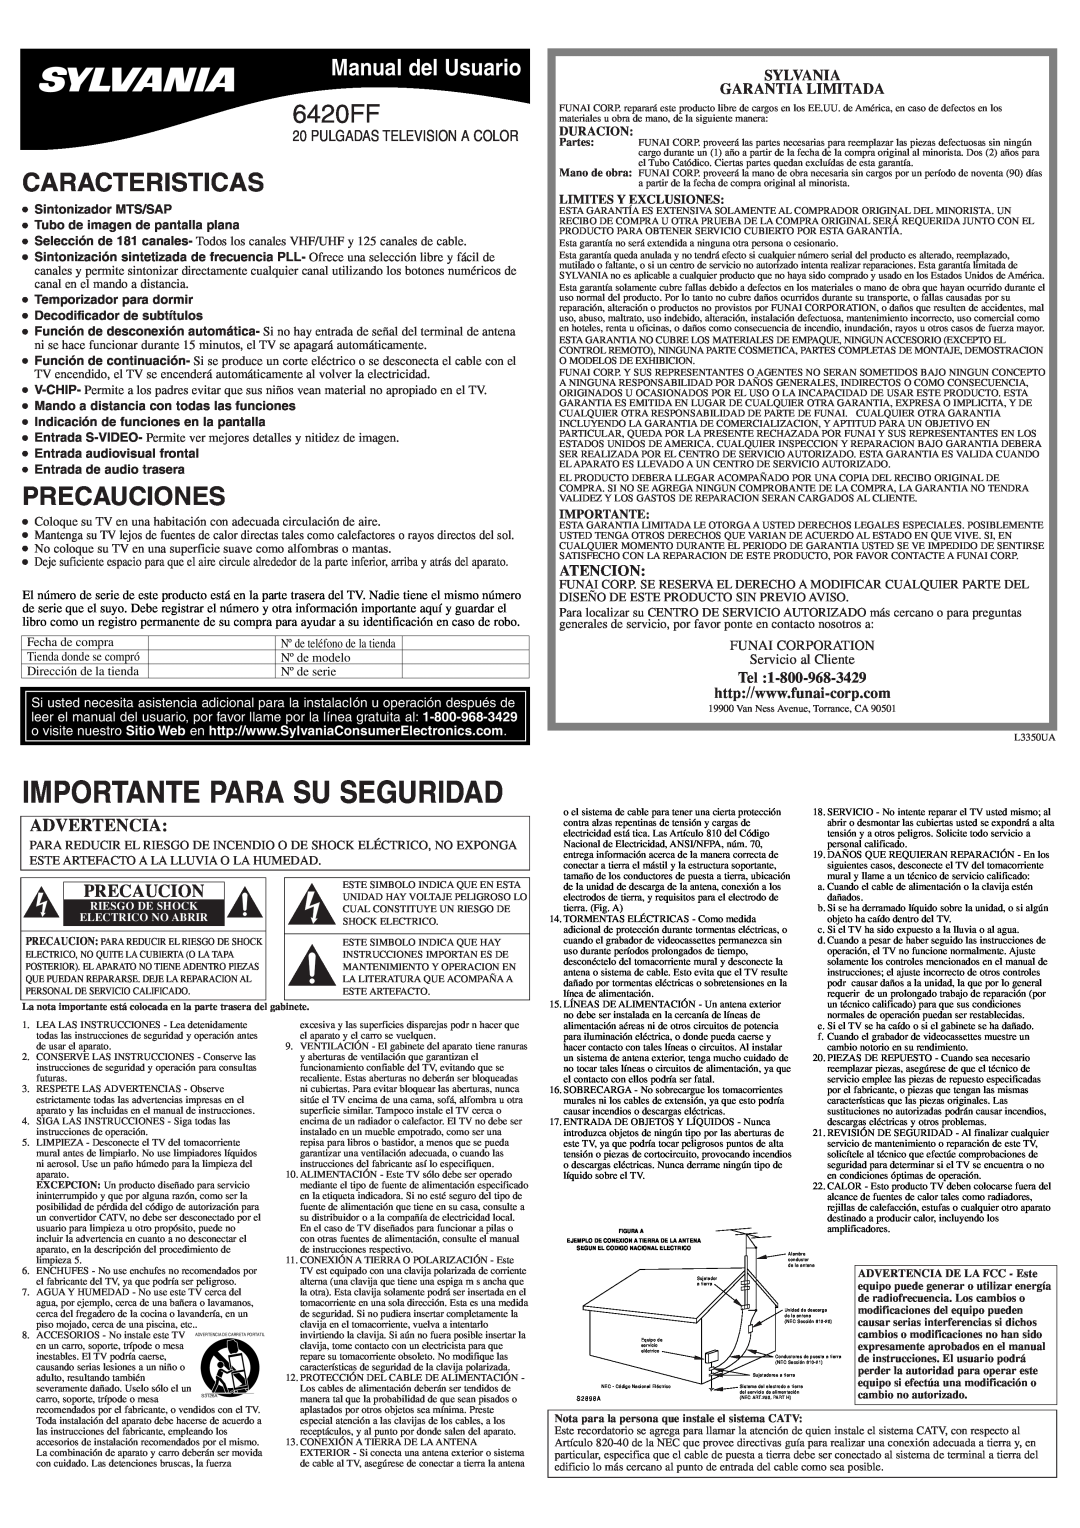 Sylvania 6420FF Caracteristicas, Precauciones, Manual del Usuario, Sylvania Garantia Limitada, Atencion, Duracion 